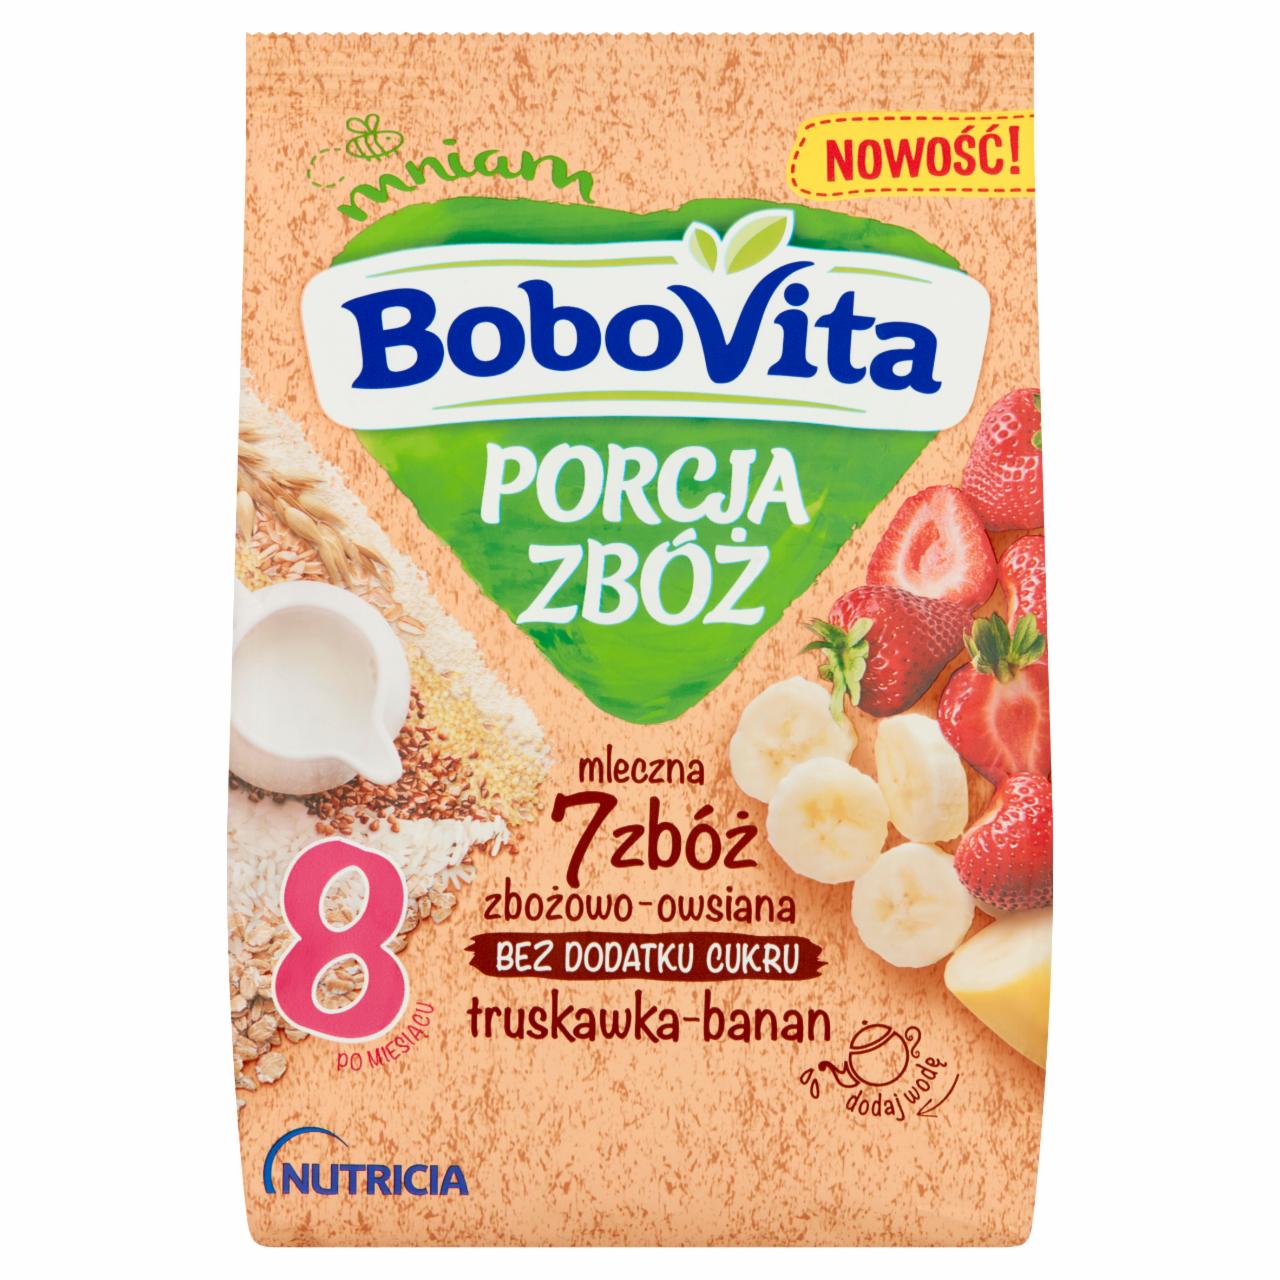 Zdjęcia - BoboVita Porcja zbóż Kaszka mleczna 7 zbóż zbożowo-owsiana truskawka-banan po 8 miesiącu 210 g